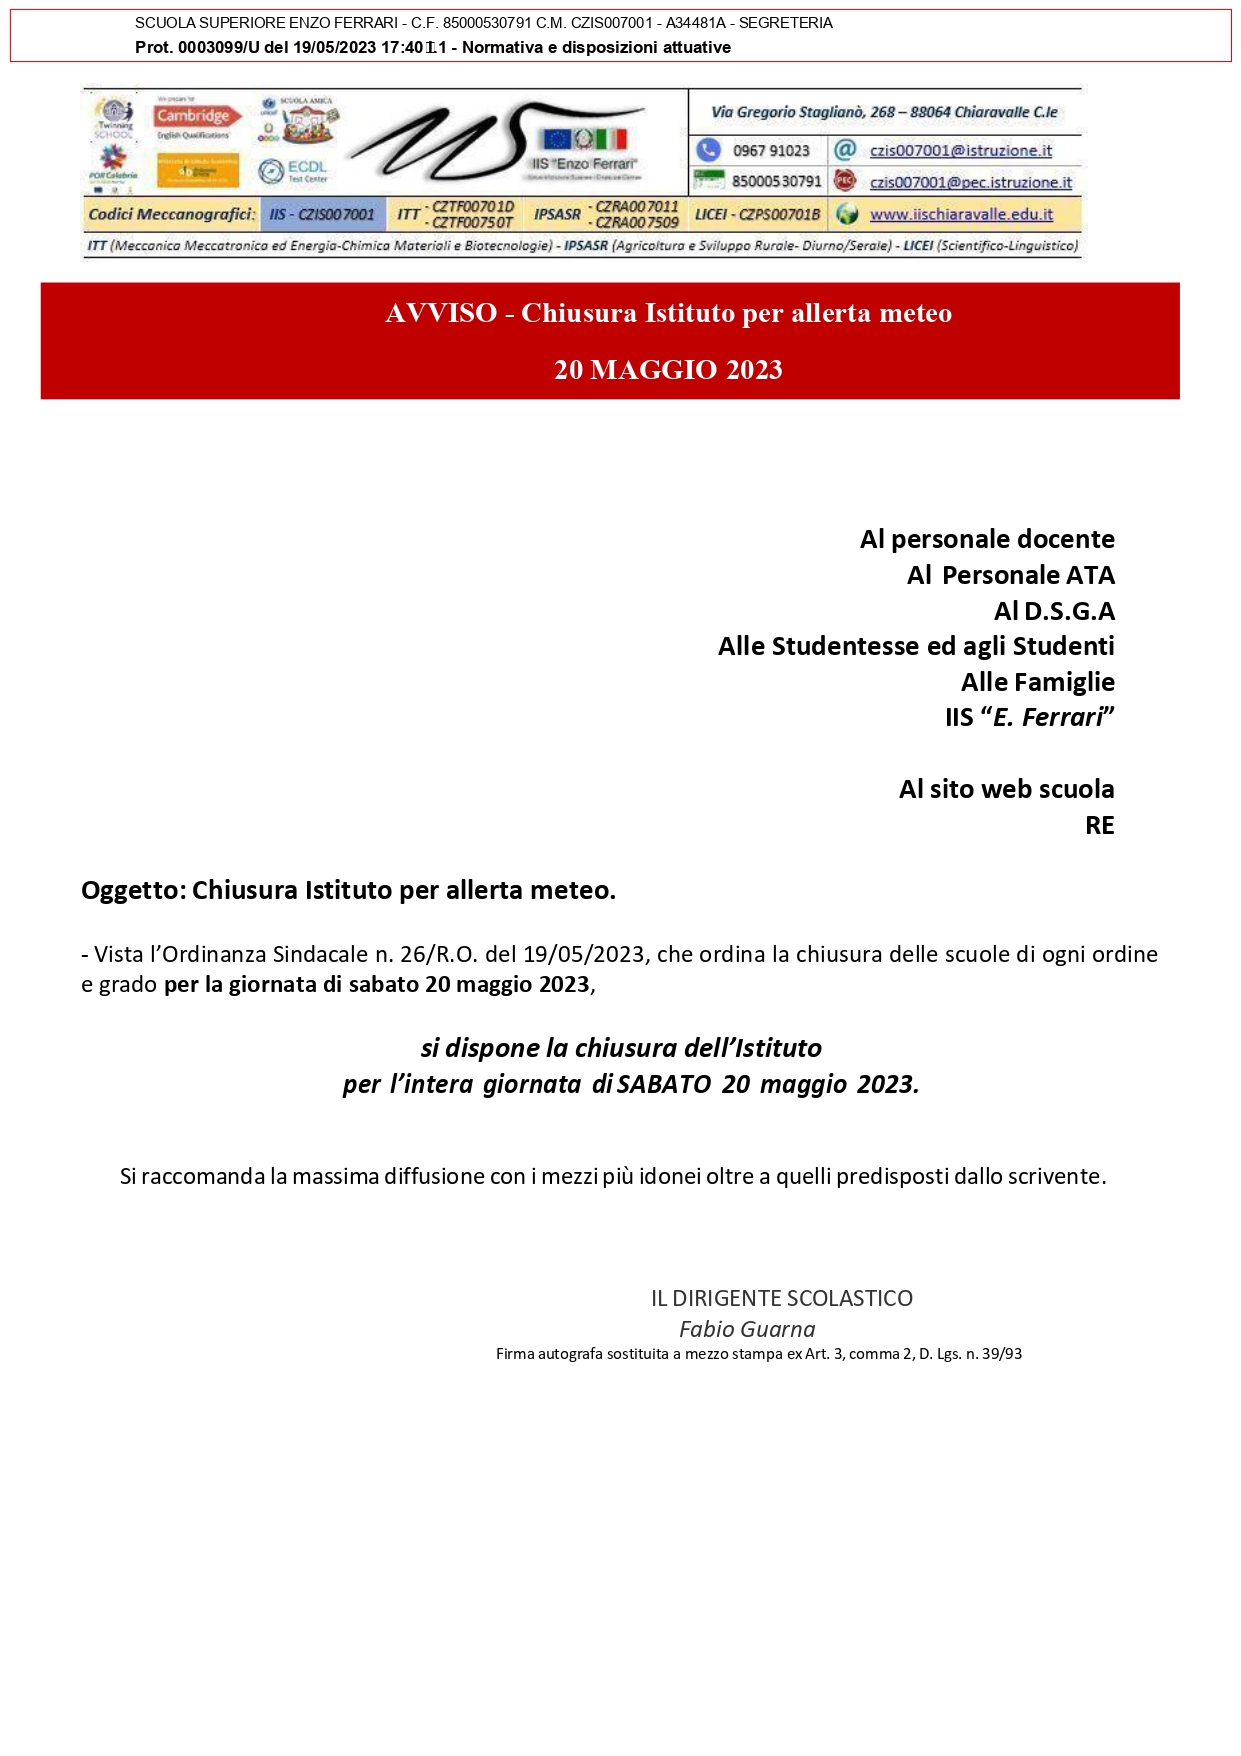 AVVISO - Chiusura Istituto per allerta meteo SABATO 20 MAGGIO 2023 page-0001